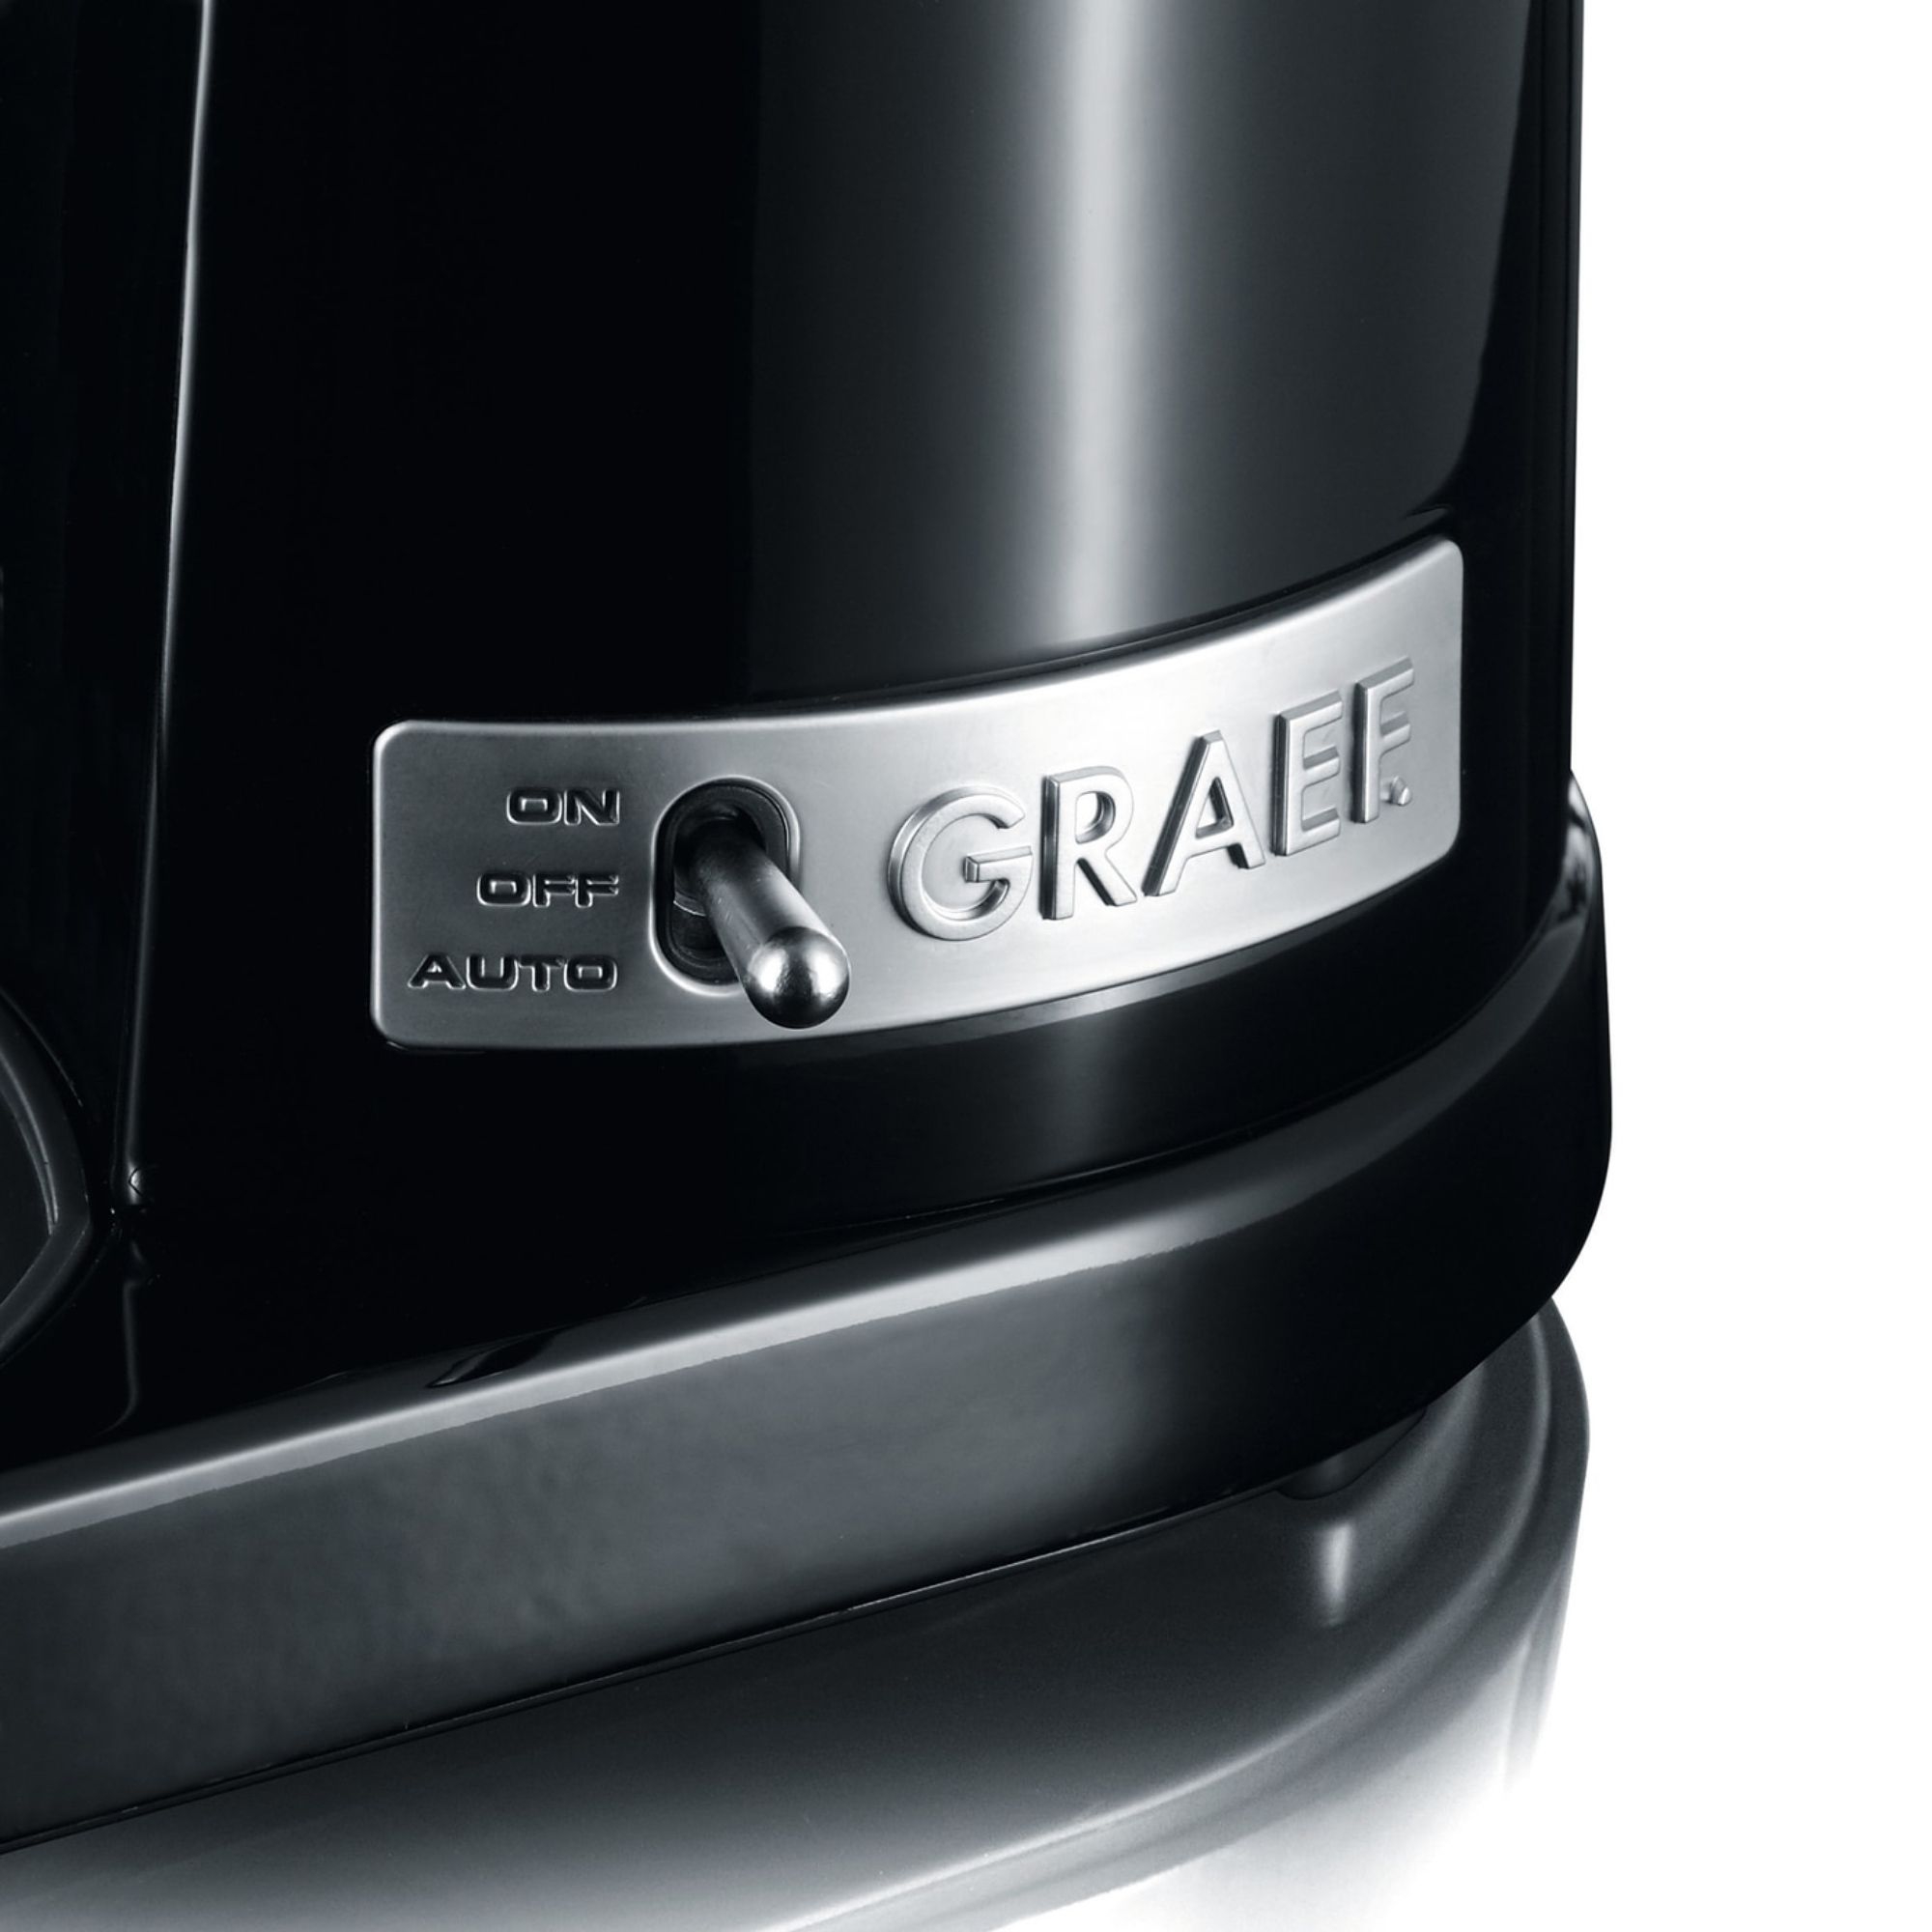 Graef - Coffee grinder CM 802